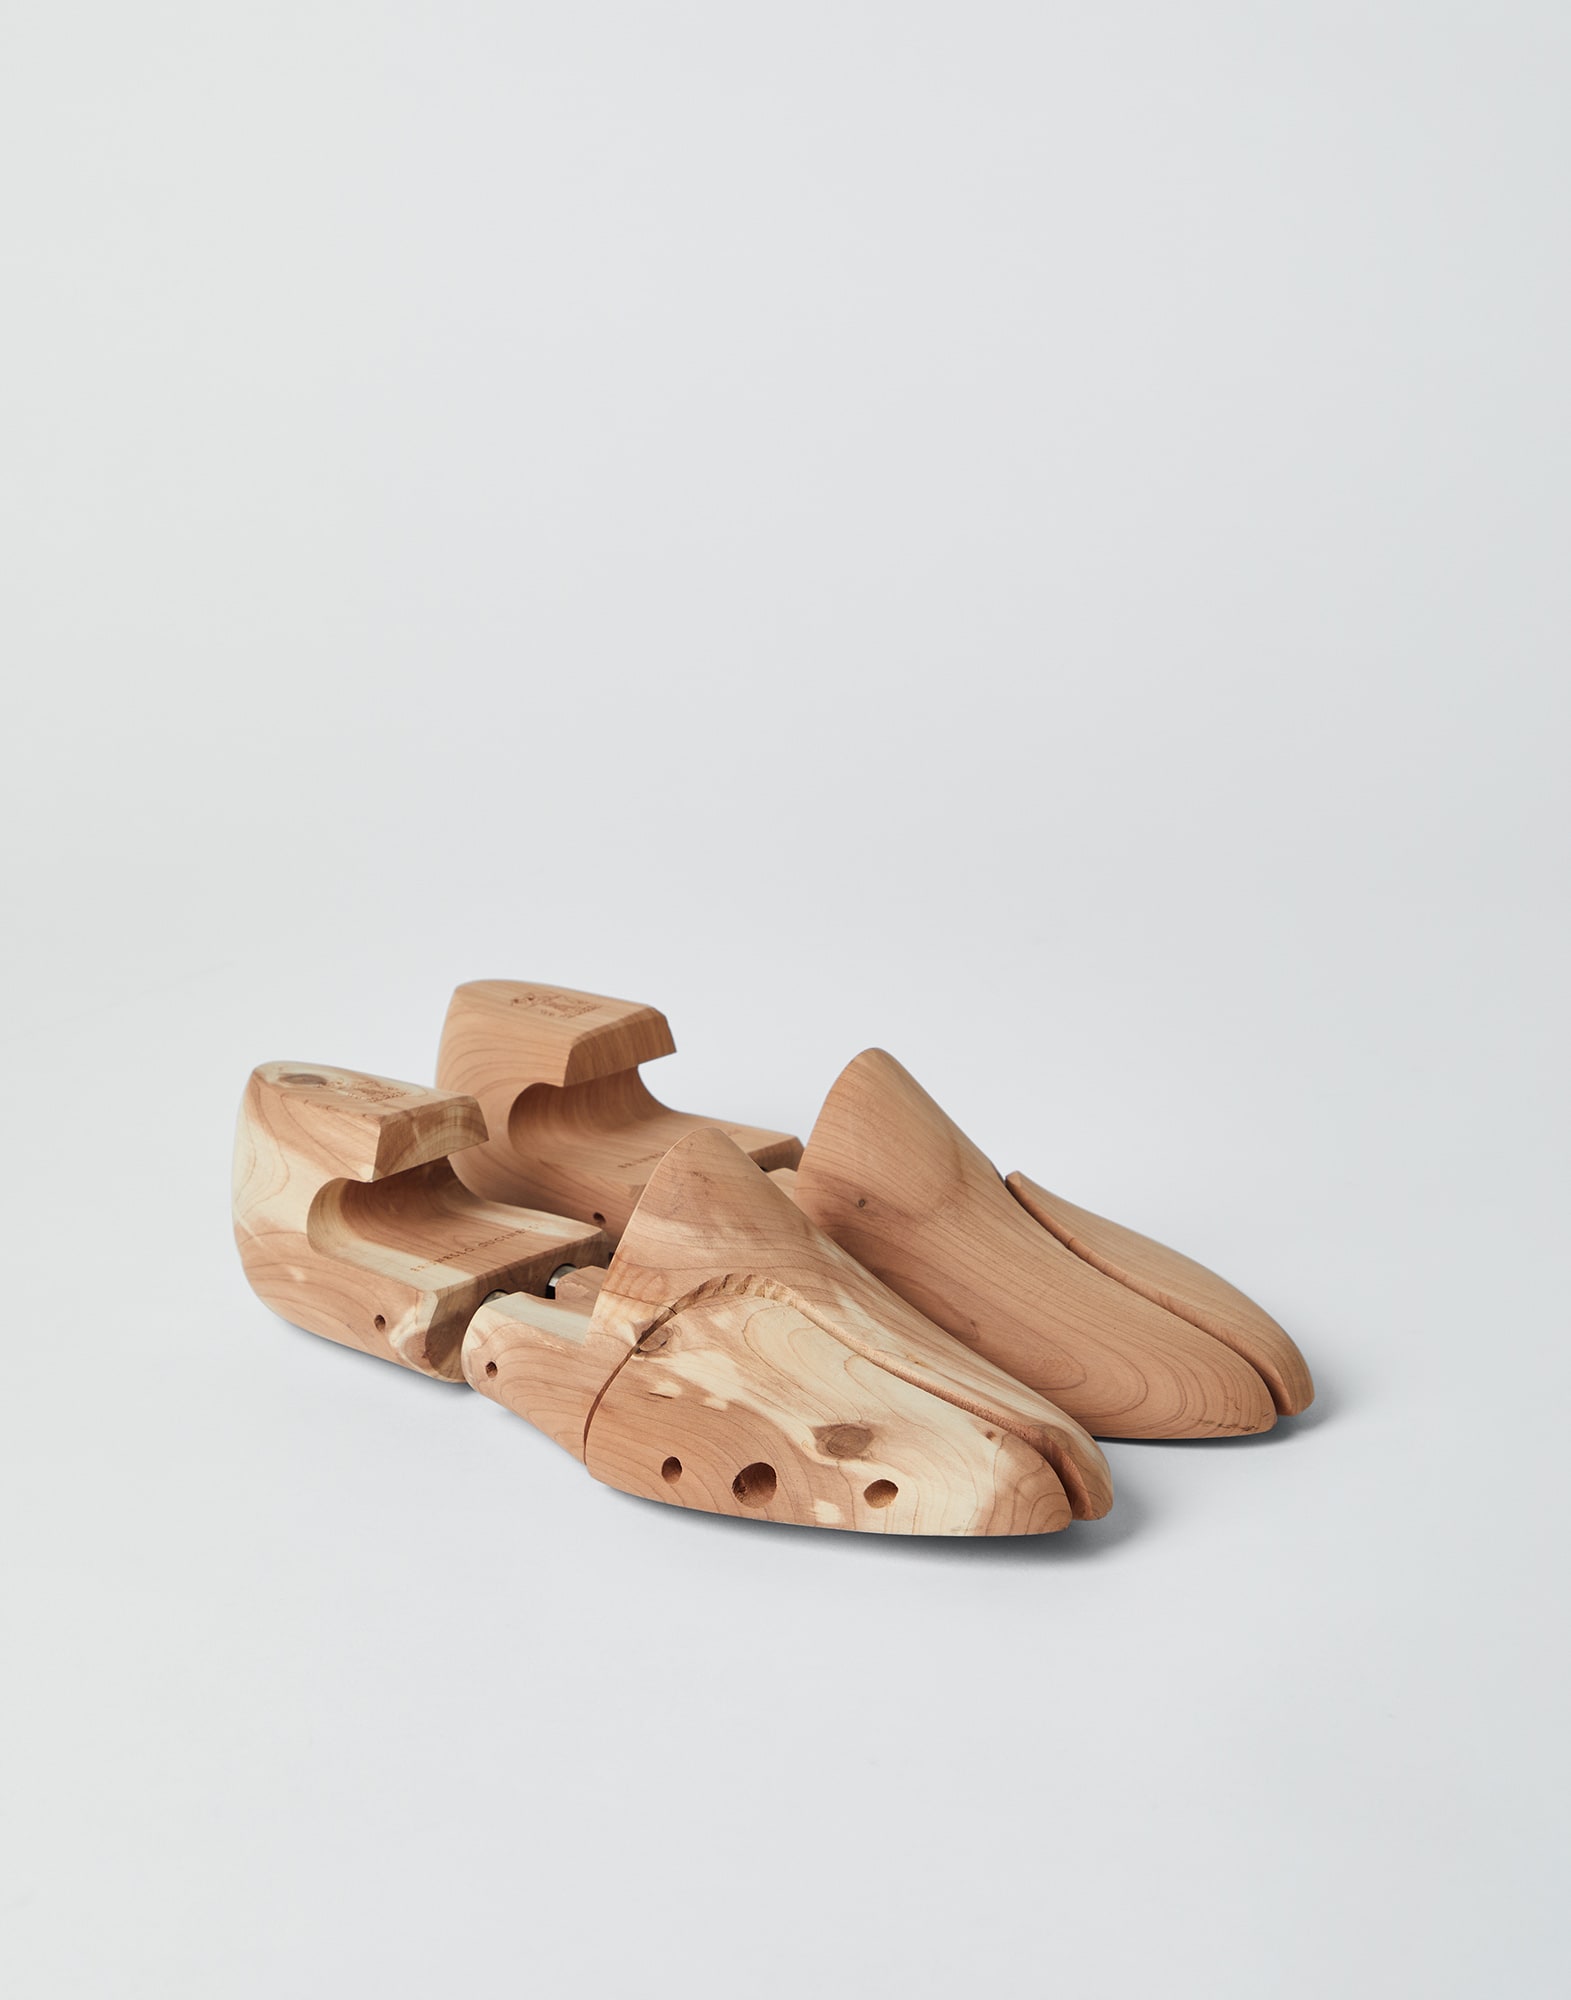 Колодка для обуви из кедрового дерева Натуральный Стиль жизни - Brunello Cucinelli